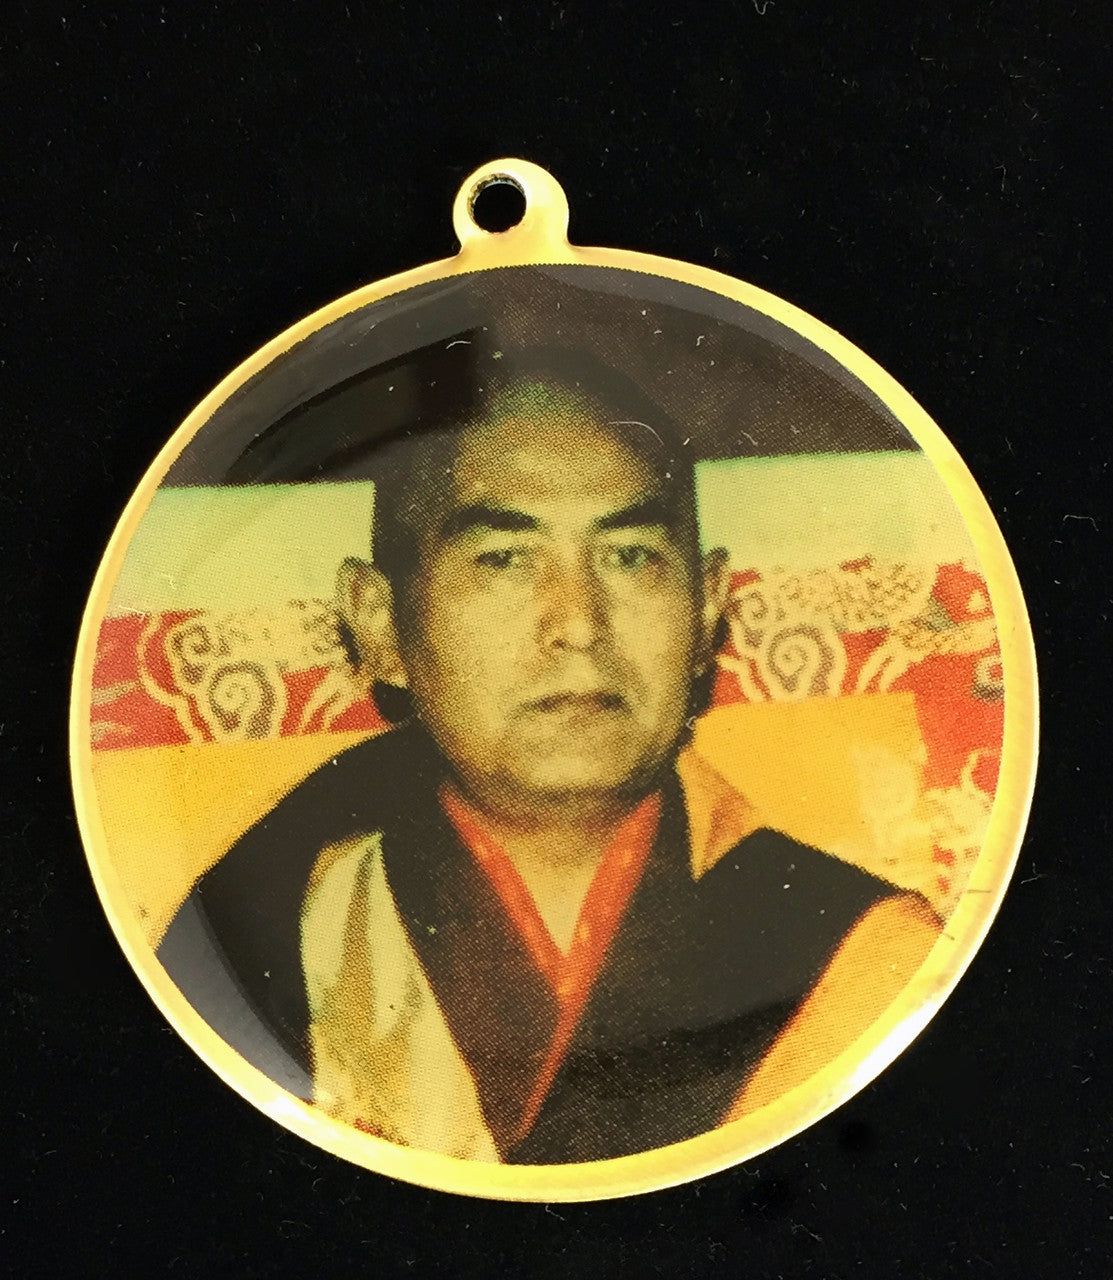 Achi Chokyi Drolma Deity Medallion